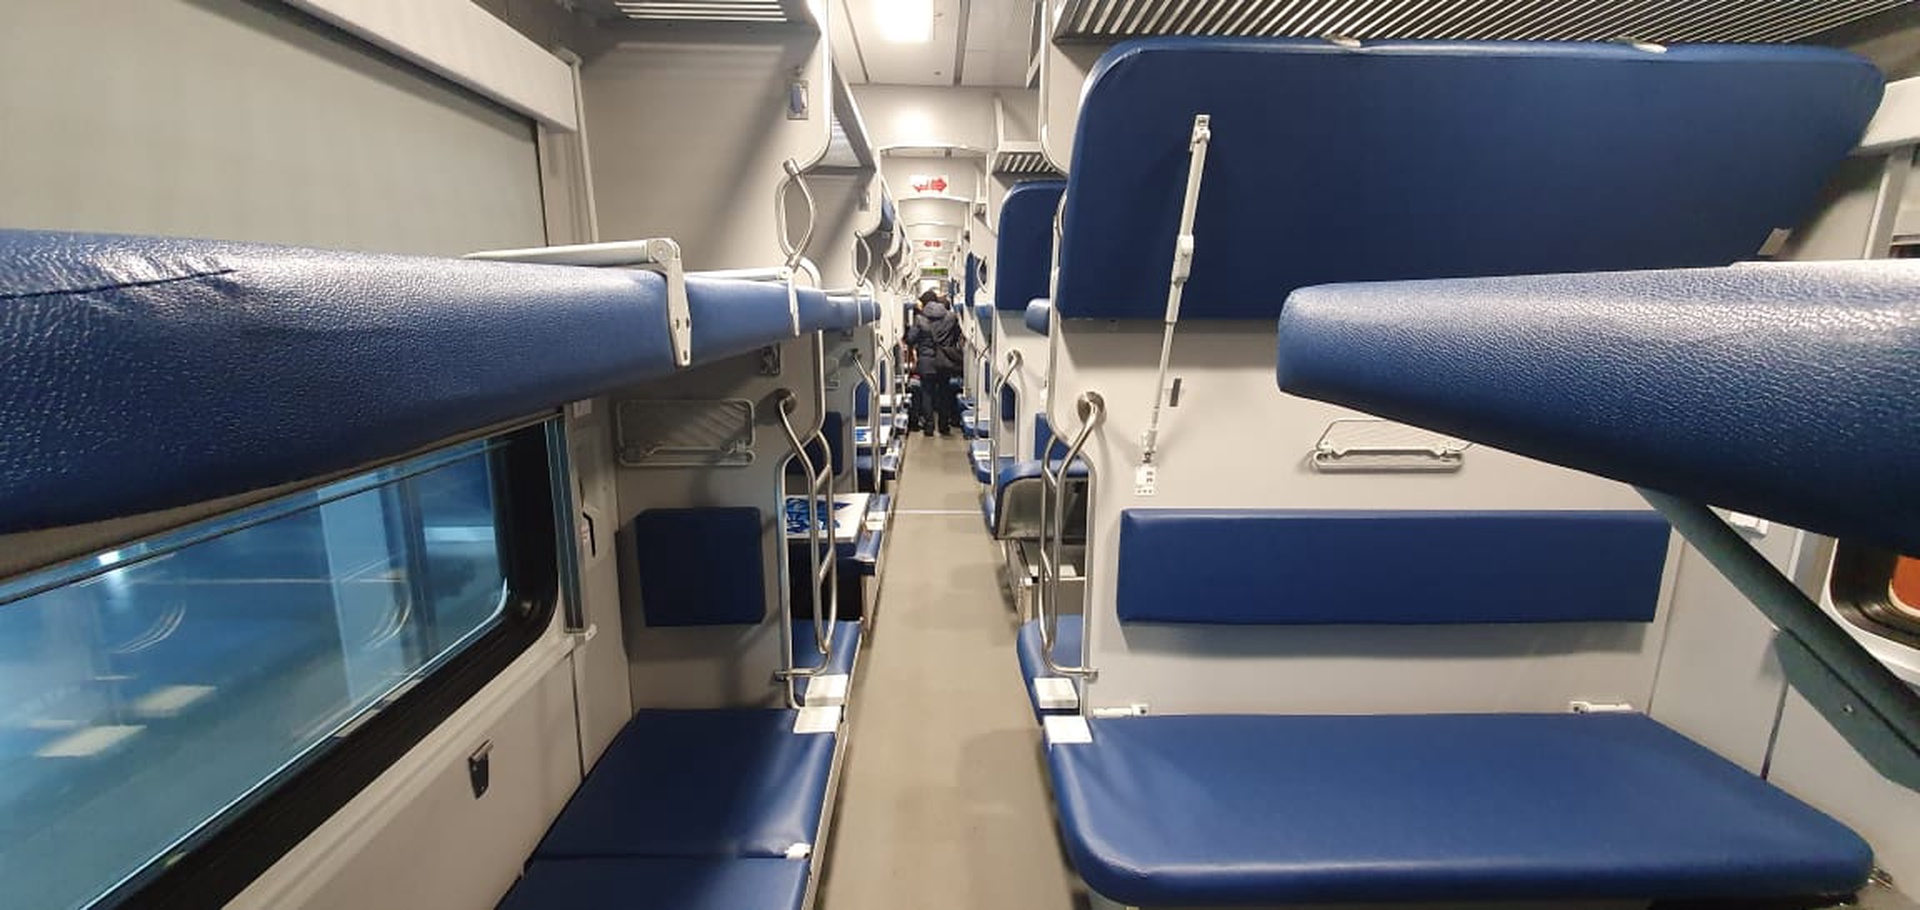 Как выглядит общий вагон в поезде фото